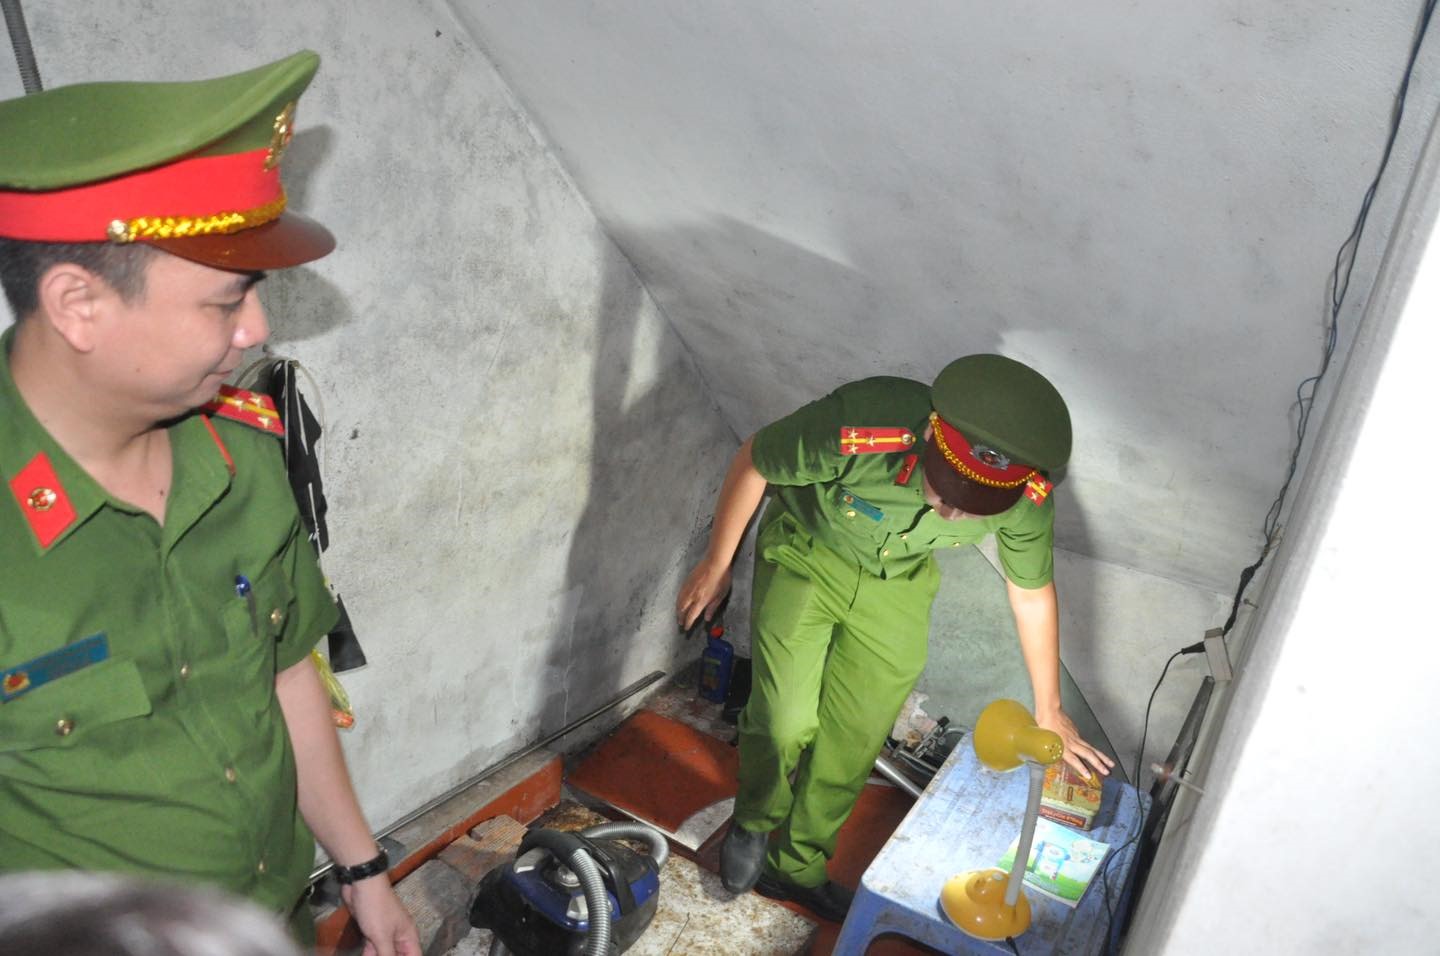 Lực lượng chức năng tiến hành khám xét khẩn cấp người, chỗ ở của 2 đối tượng. Ảnh: Công an huyện Gia Lộc.